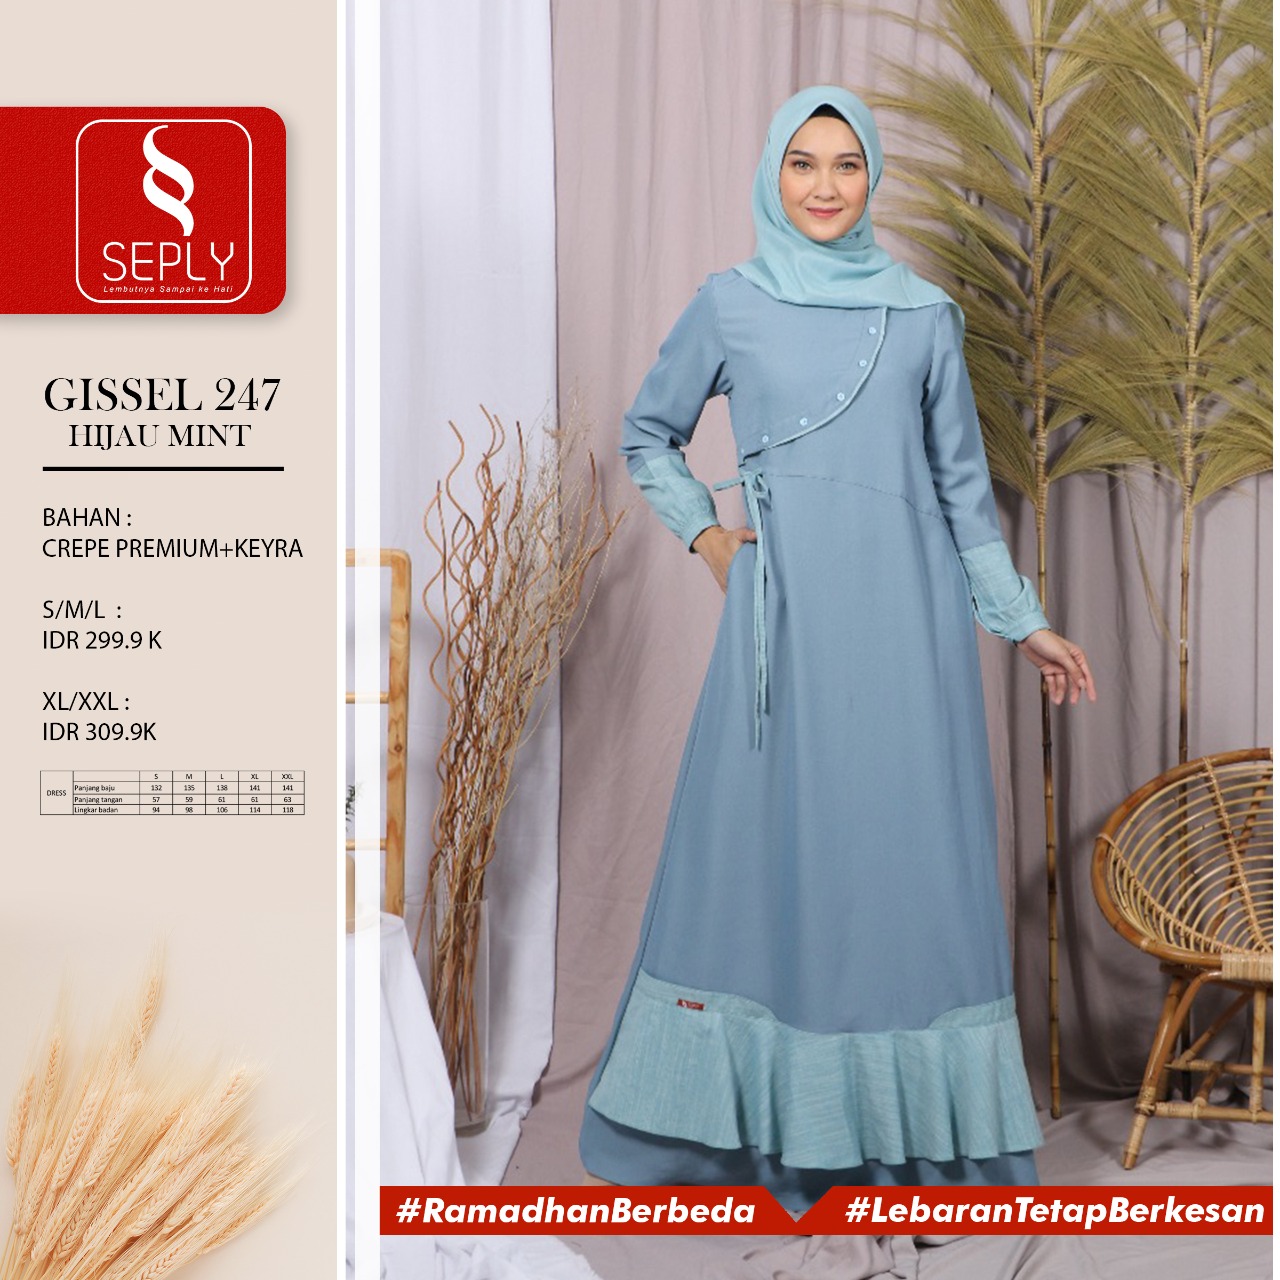 Gamis Seply Gissel 247 Membeli Jualan Online Baju Muslim Jumpsuit Dengan Harga Murah Lazada Indonesia